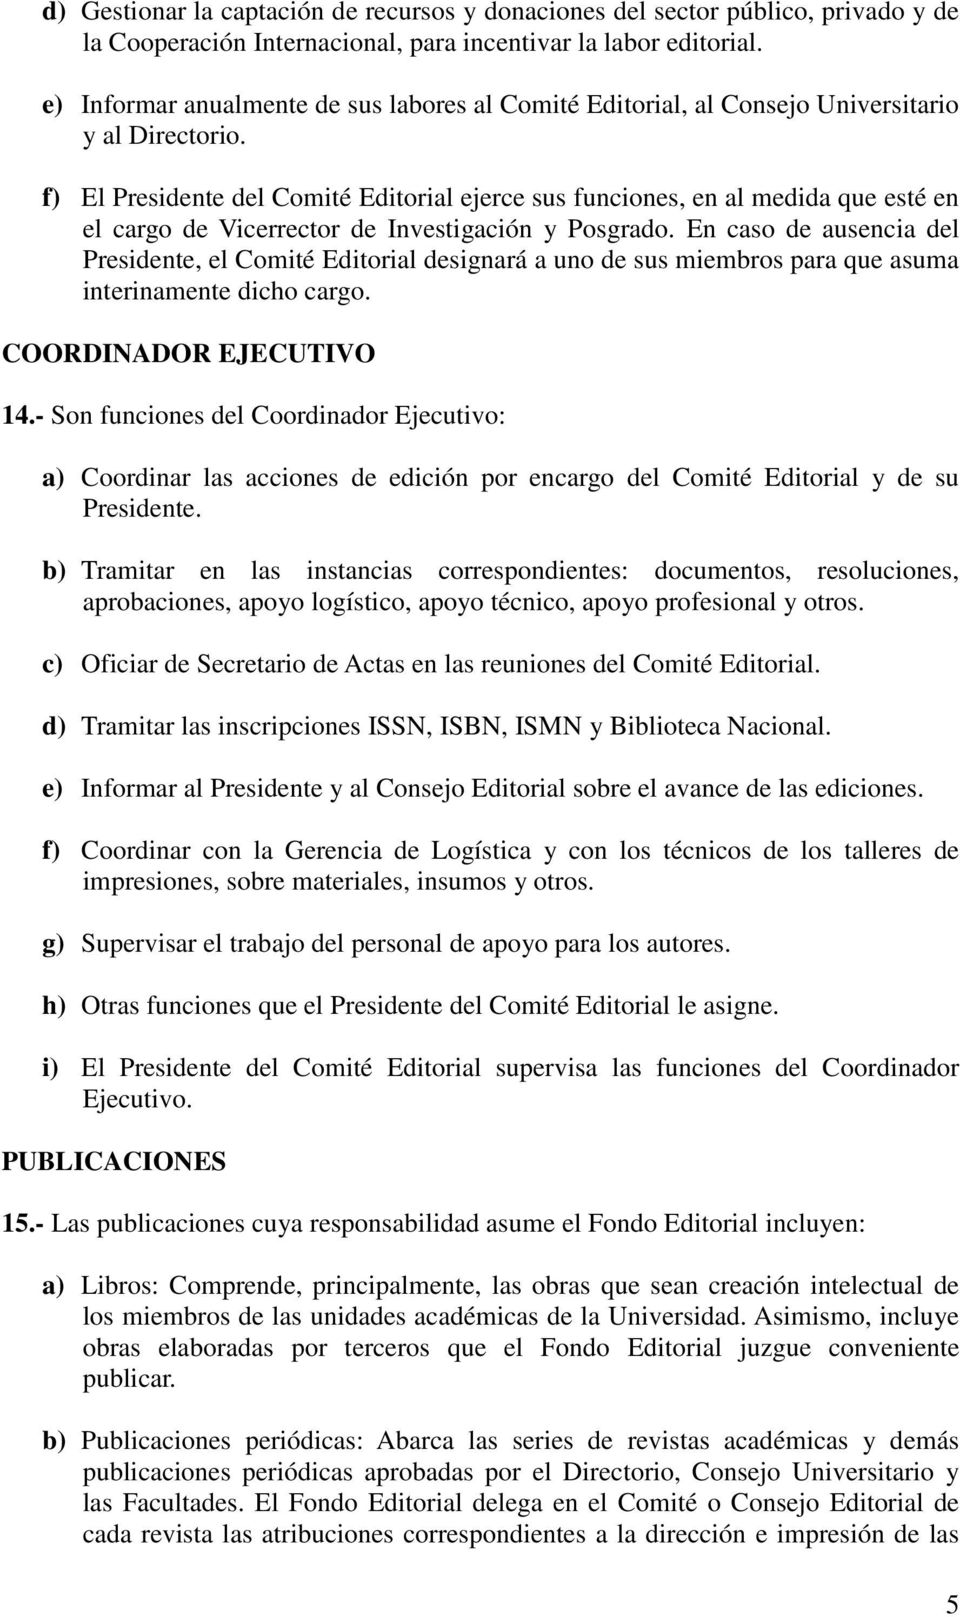 f) El Presidente del Comité Editorial ejerce sus funciones, en al medida que esté en el cargo de Vicerrector de Investigación y Posgrado.